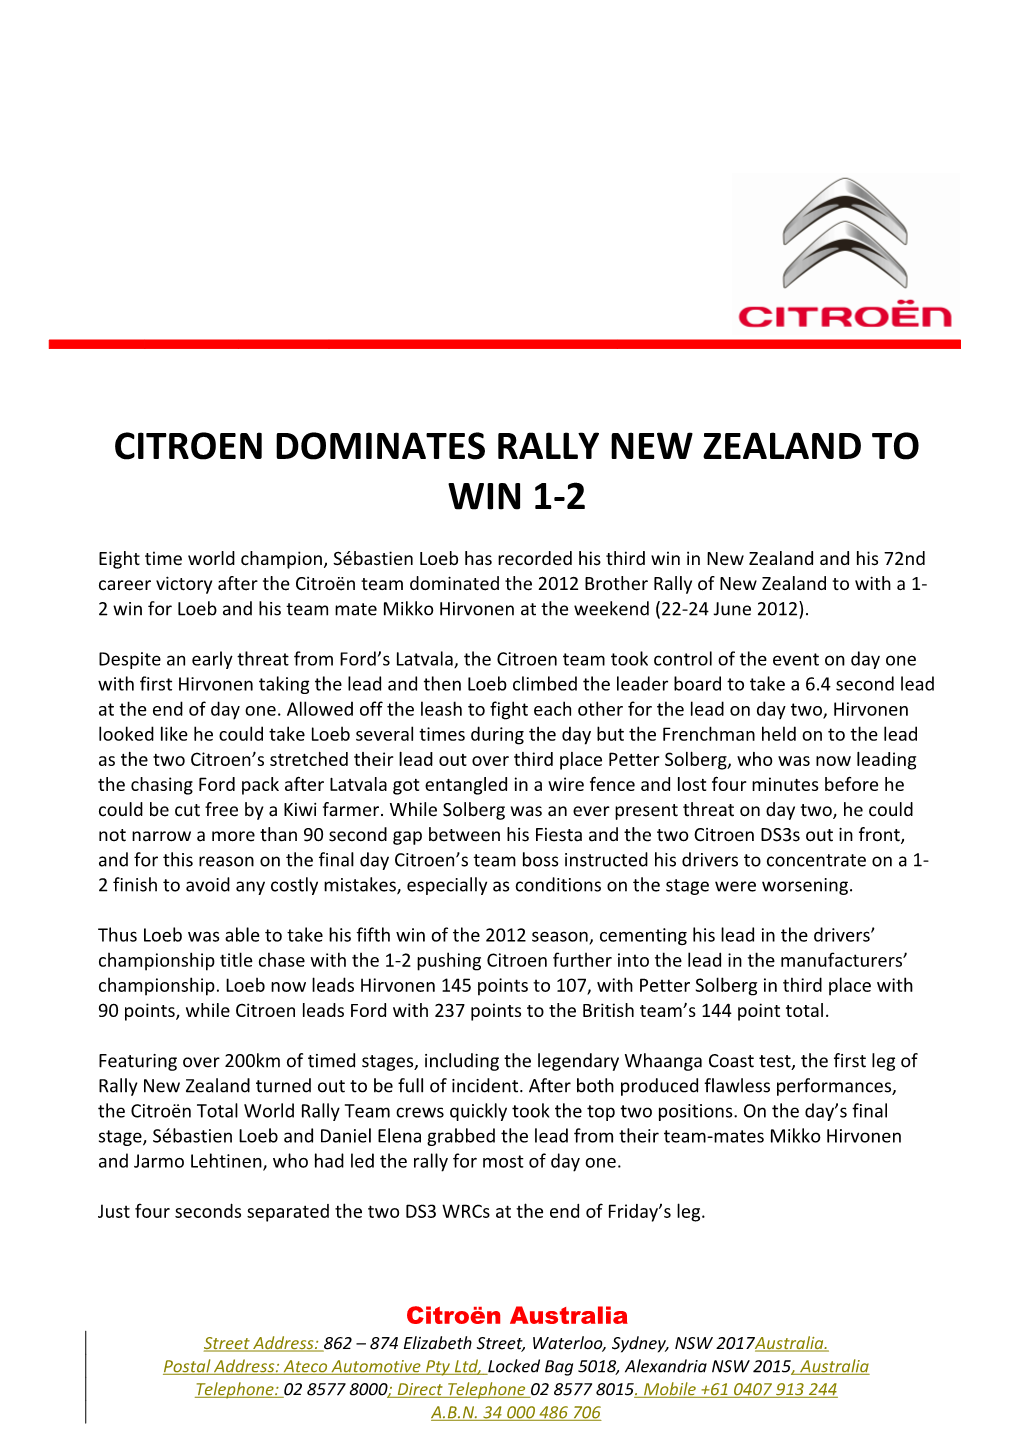 Citroen Dominates Rally New Zealand to Win 1-2